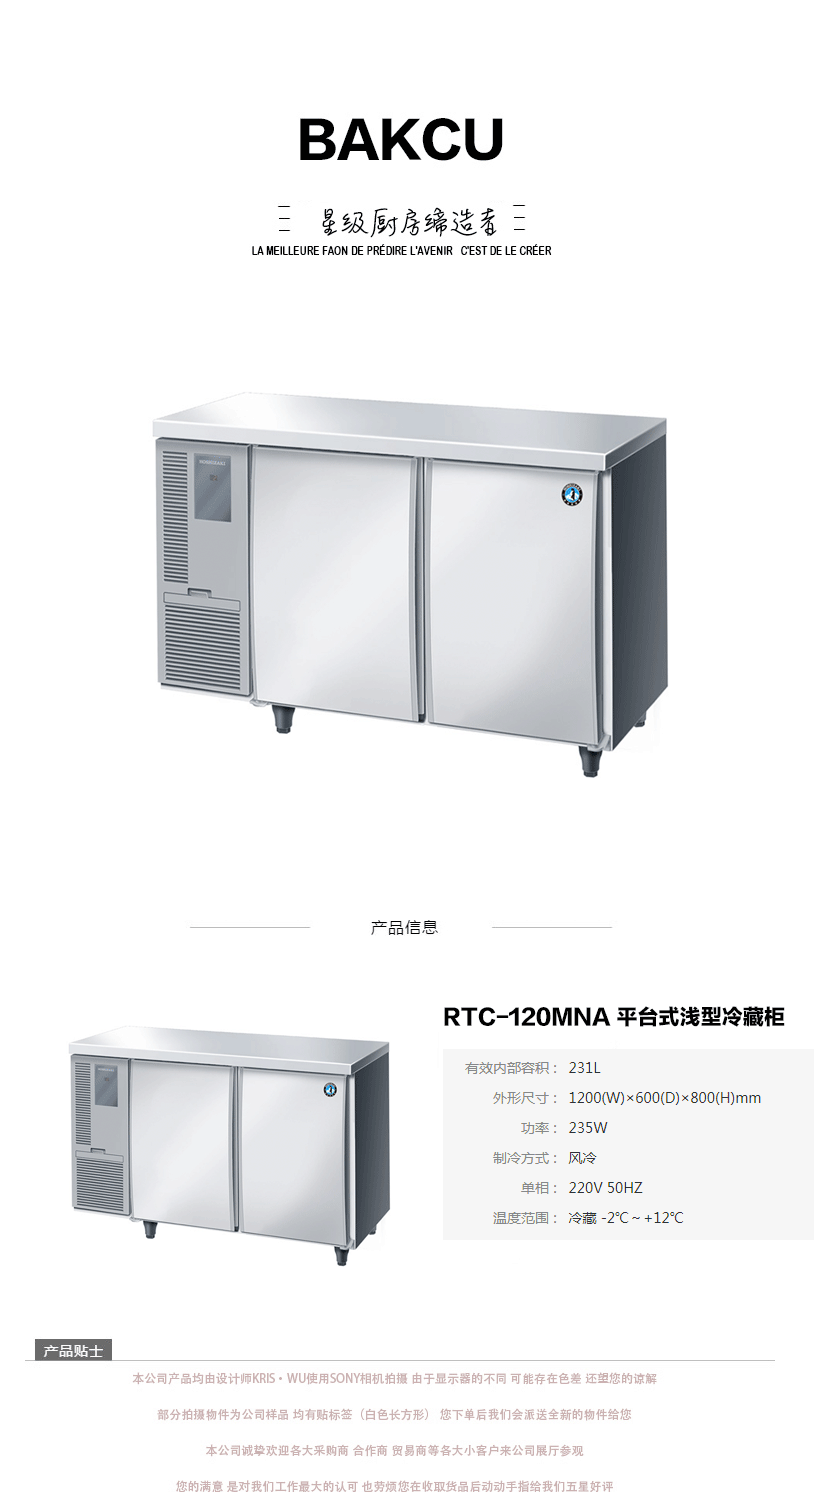 日本HOSHIZAKI星崎不锈钢原装进口RTC-120MNA 平台式浅型冷藏柜示例图1